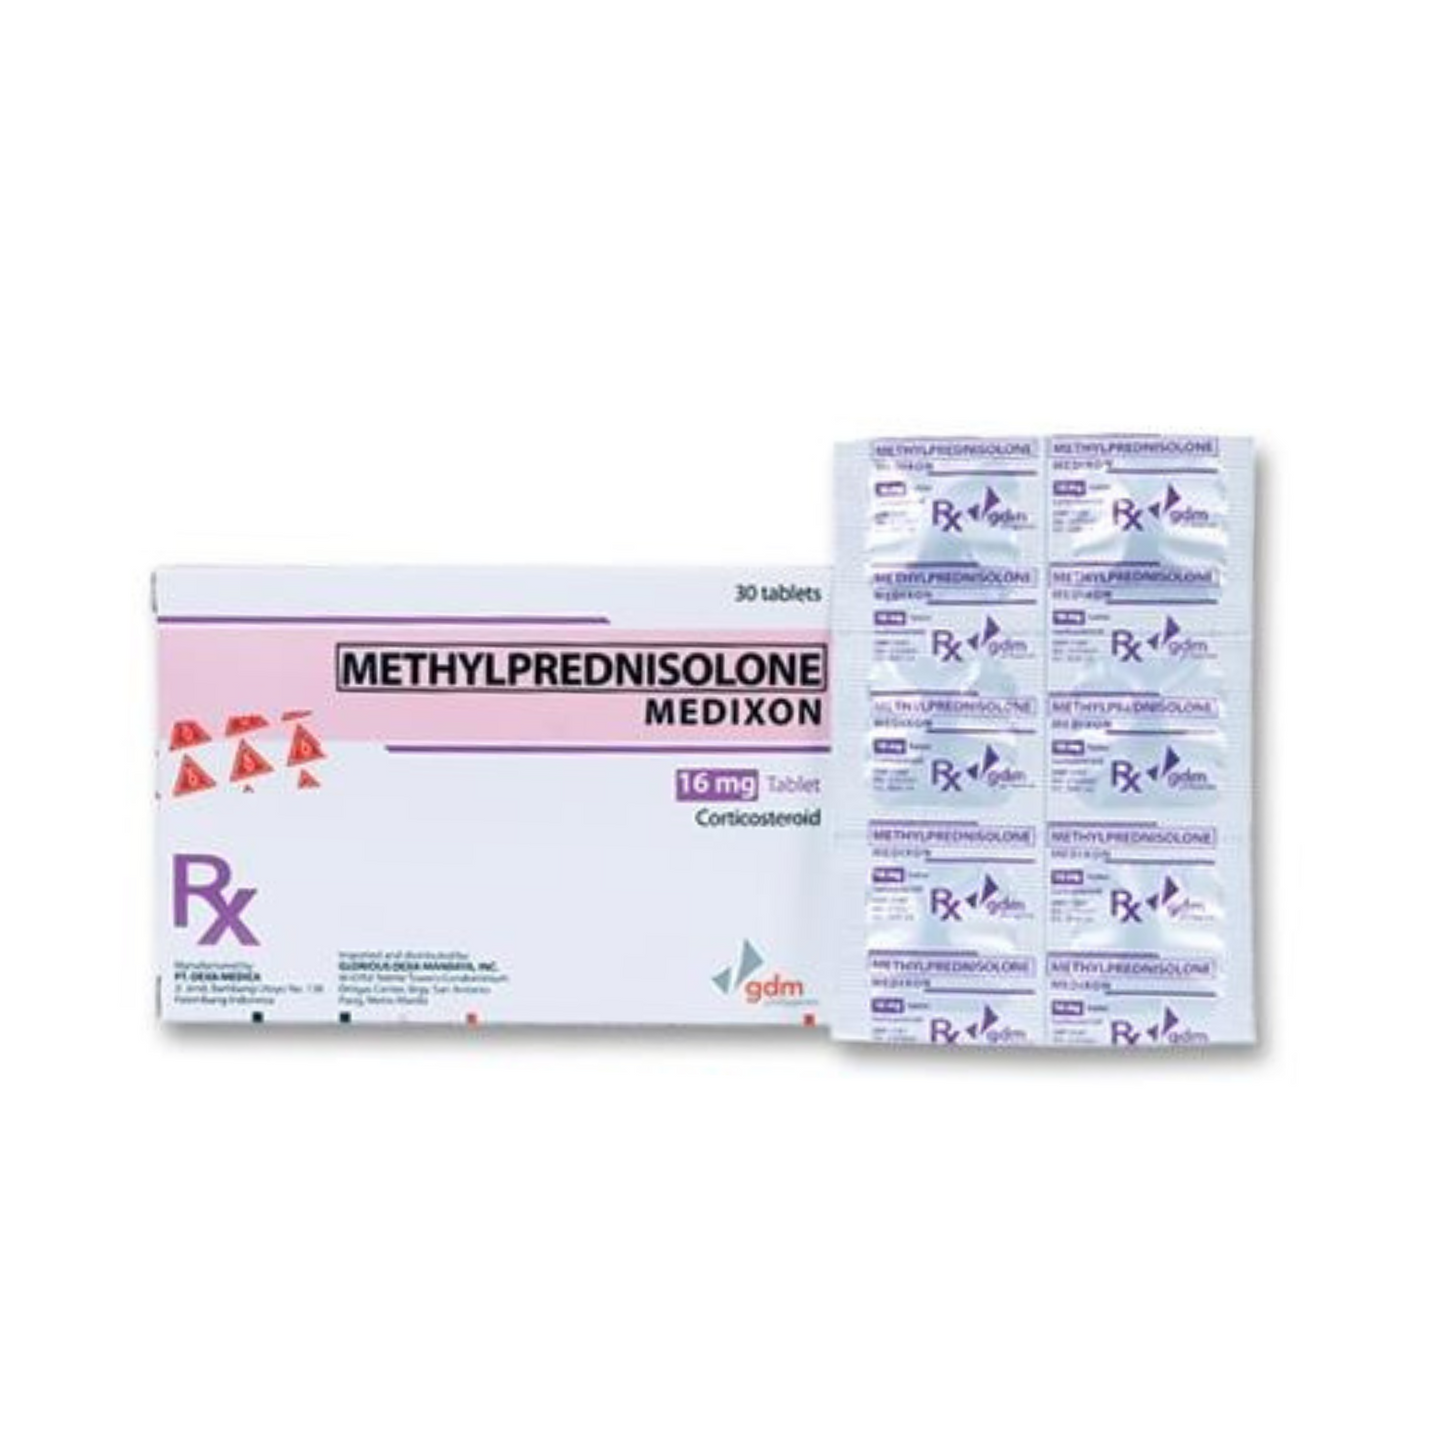 MEDIXON Methylprednisolone 16mg Tablet x 1